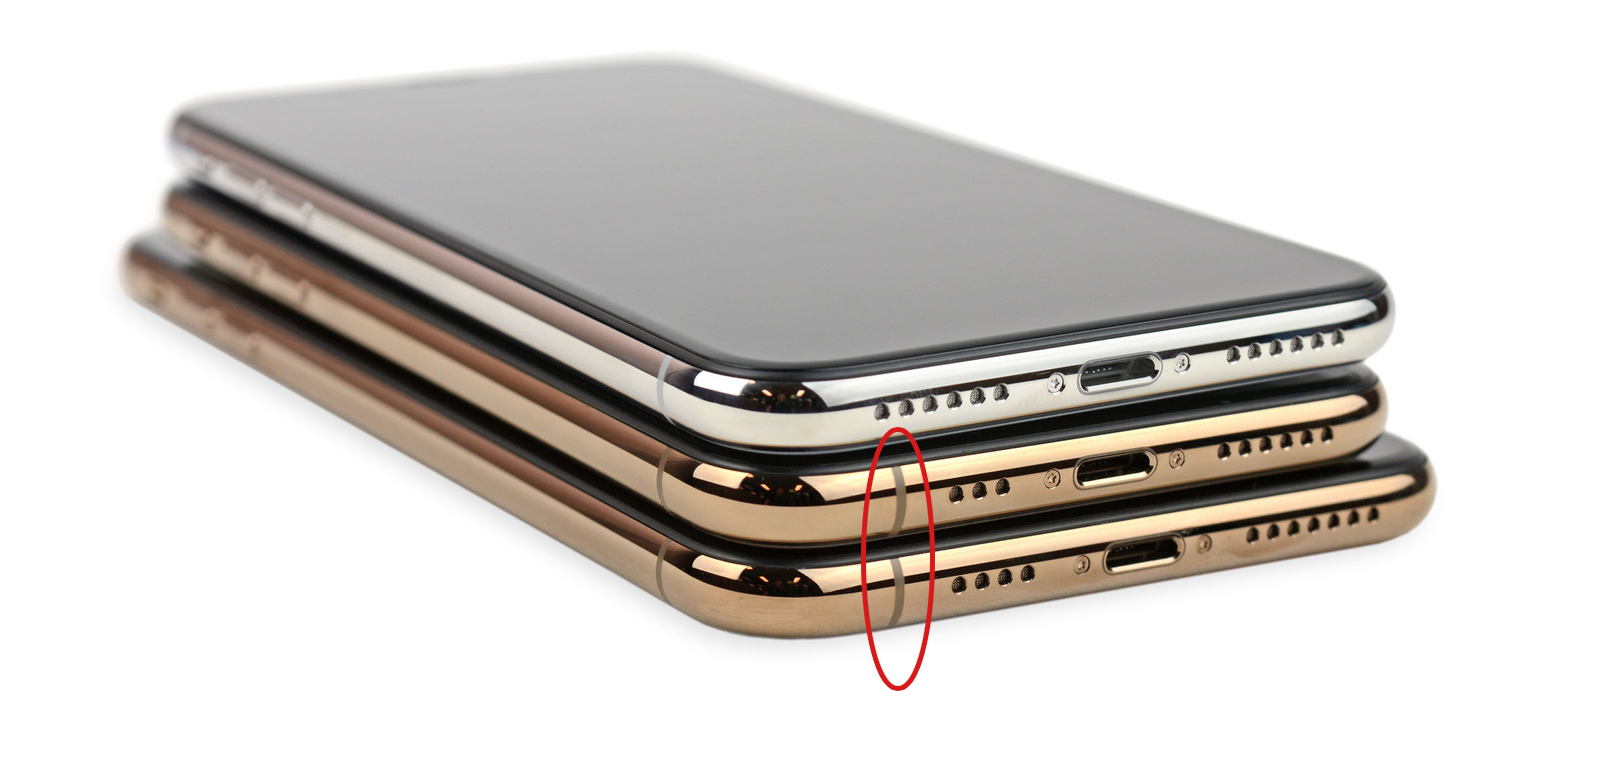 Người dùng phản ánh
iPhone XS và XS Max bắt sóng điện thoại và wifi yếu